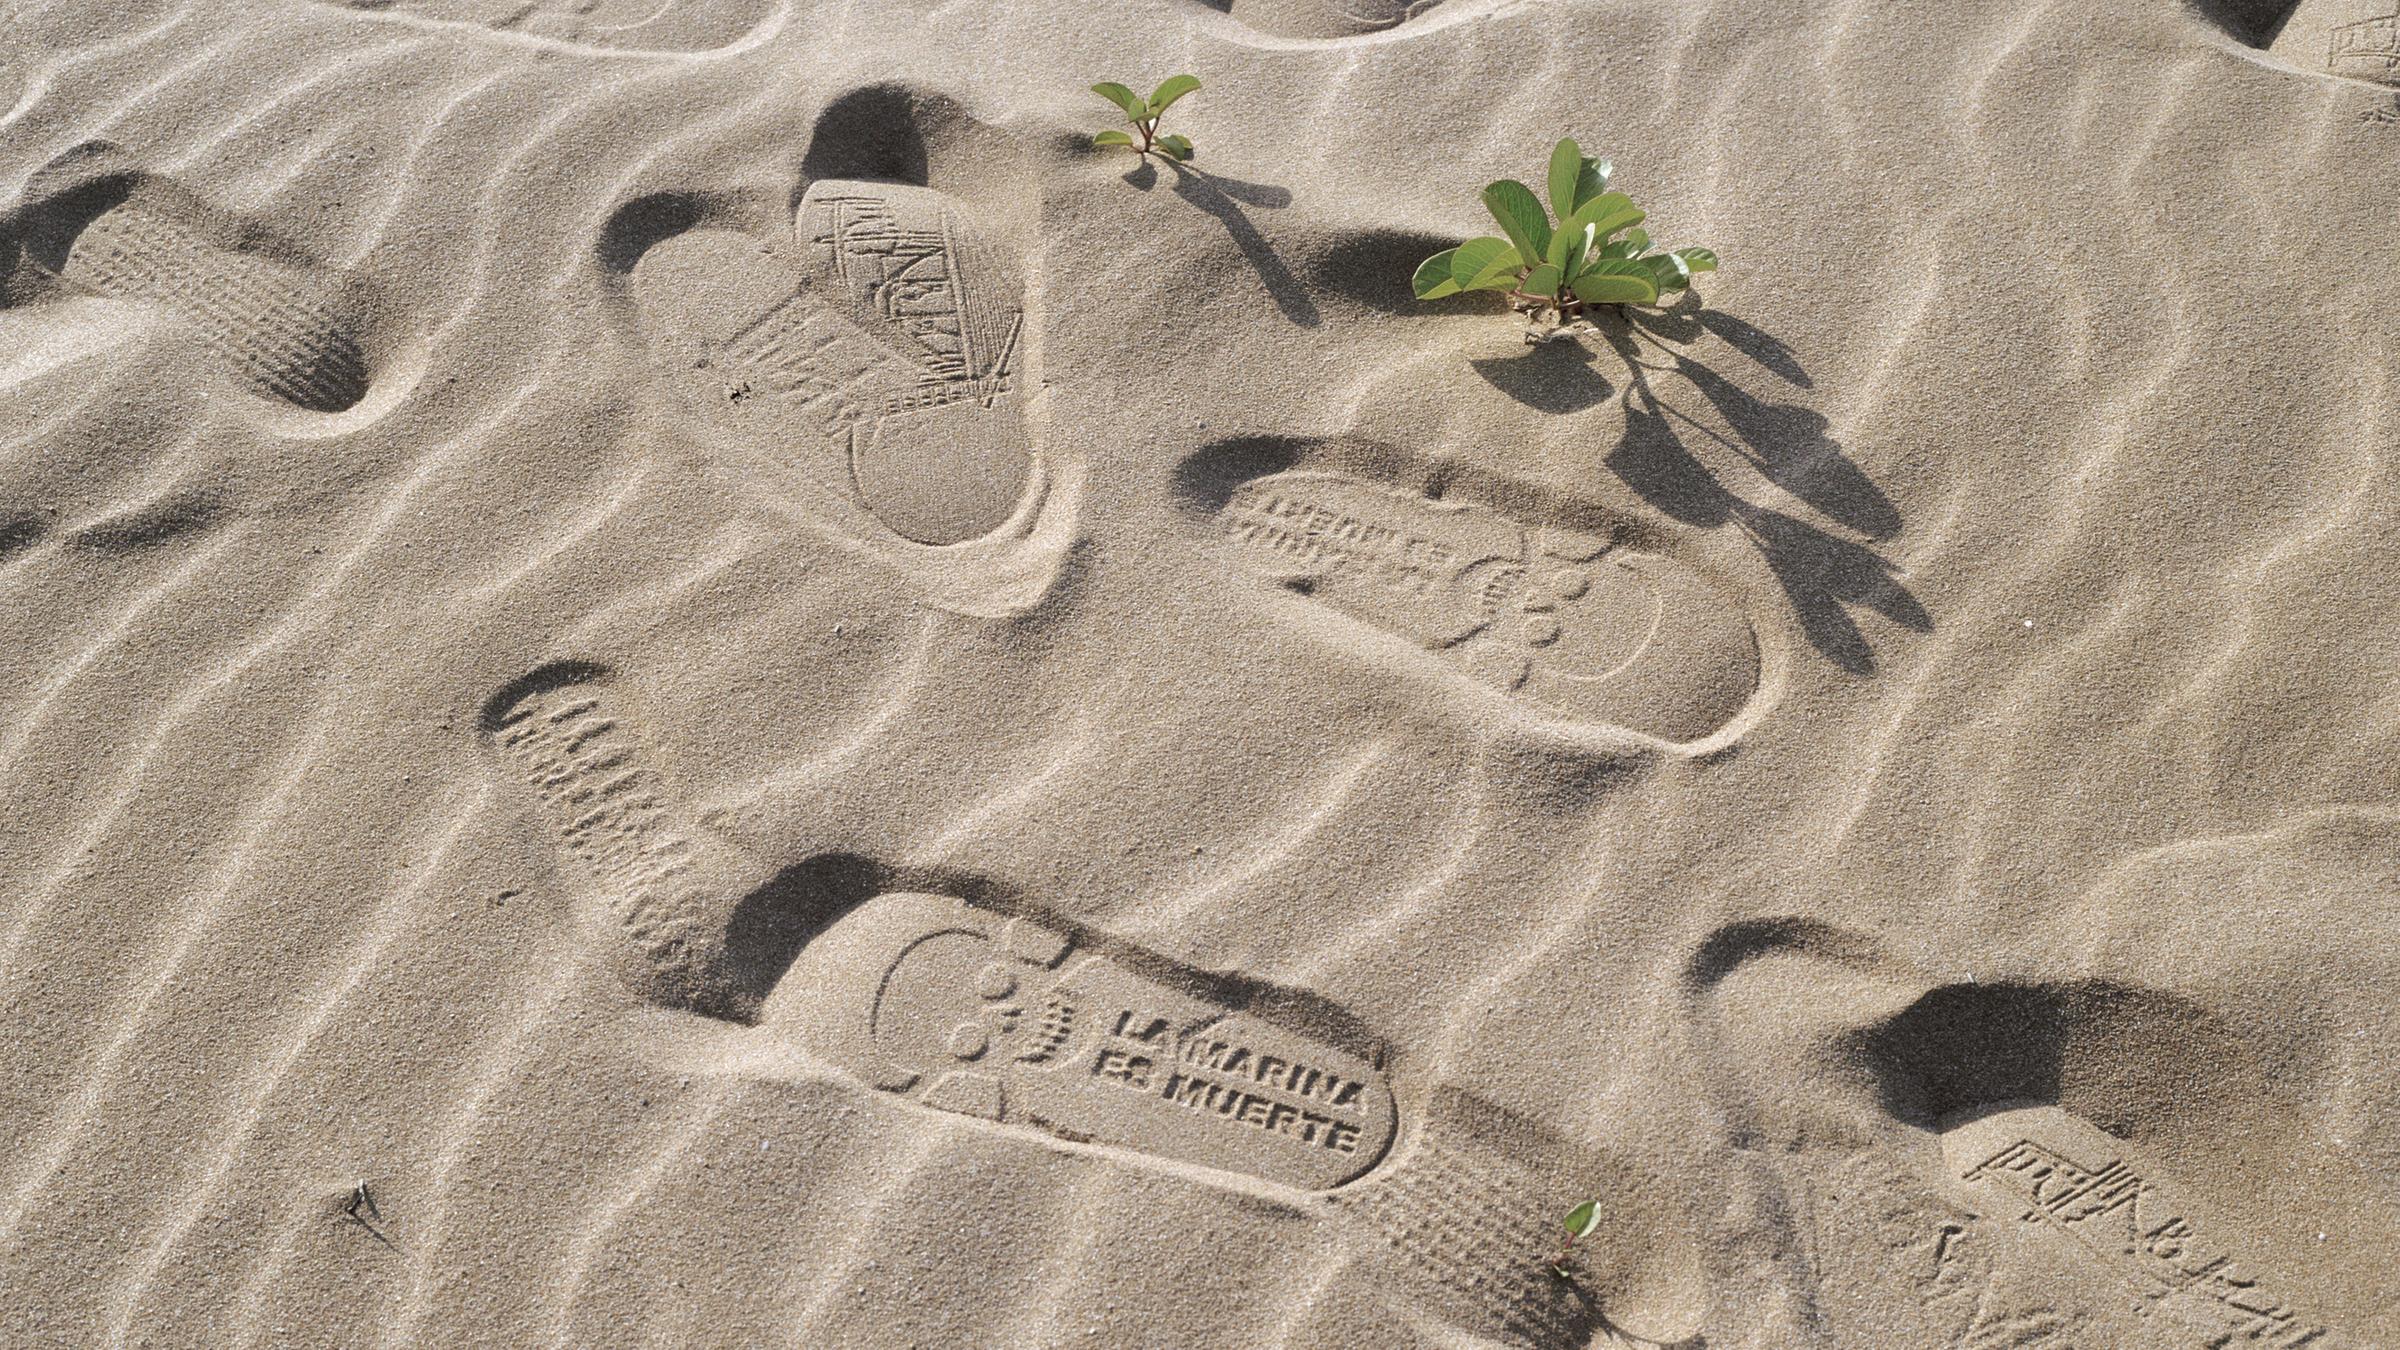 Fußspuren im Sand mit der Aufschrift "La Marina es Muerte" (D...</p>

                        <a href=